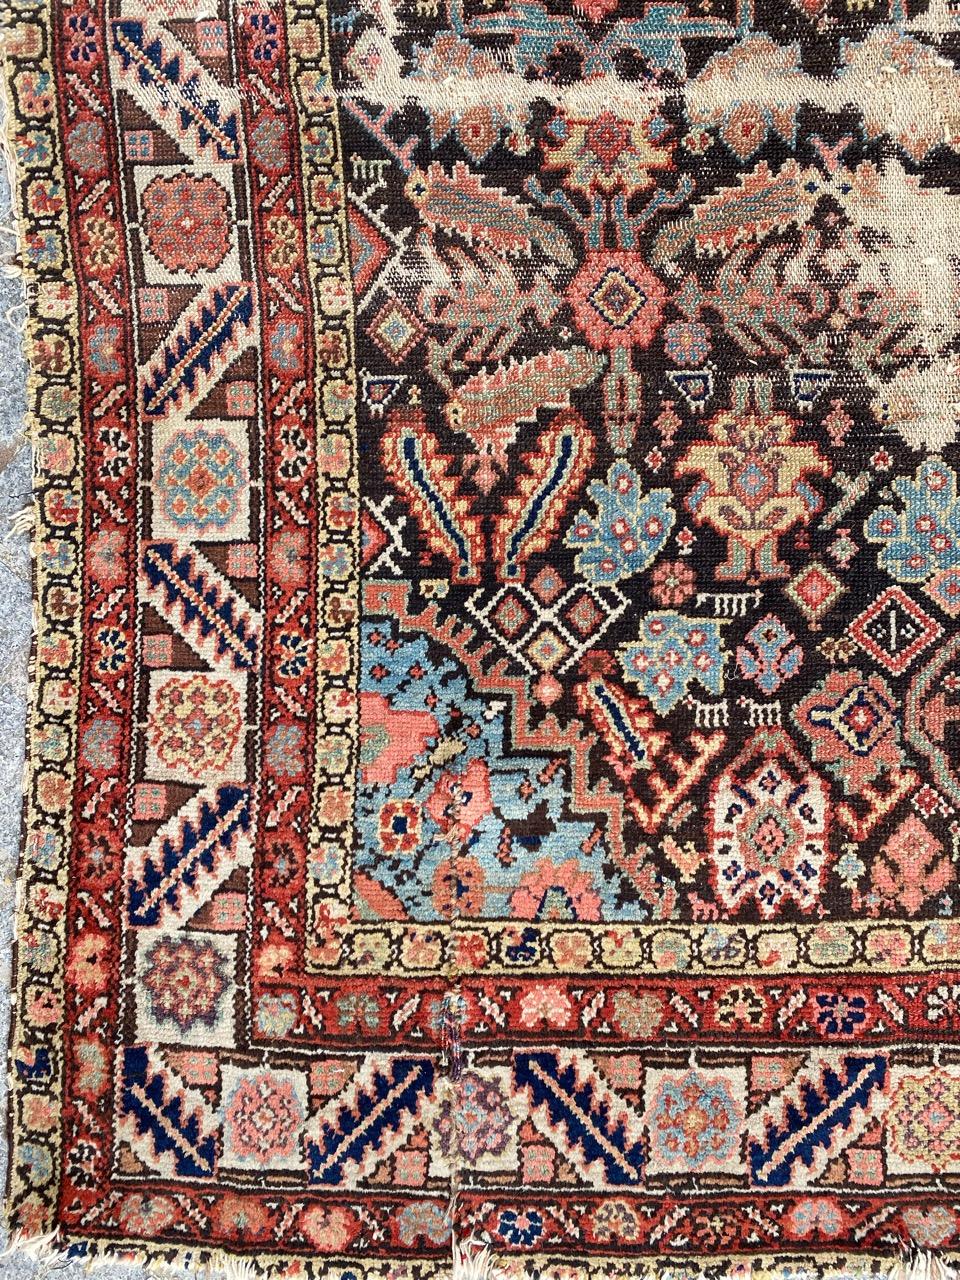 Schöner Teppich aus dem 19. Jahrhundert mit schönem Design und schönen natürlichen Farben, komplett handgeknüpft mit Wollsamt auf Baumwollbasis.

✨✨✨
